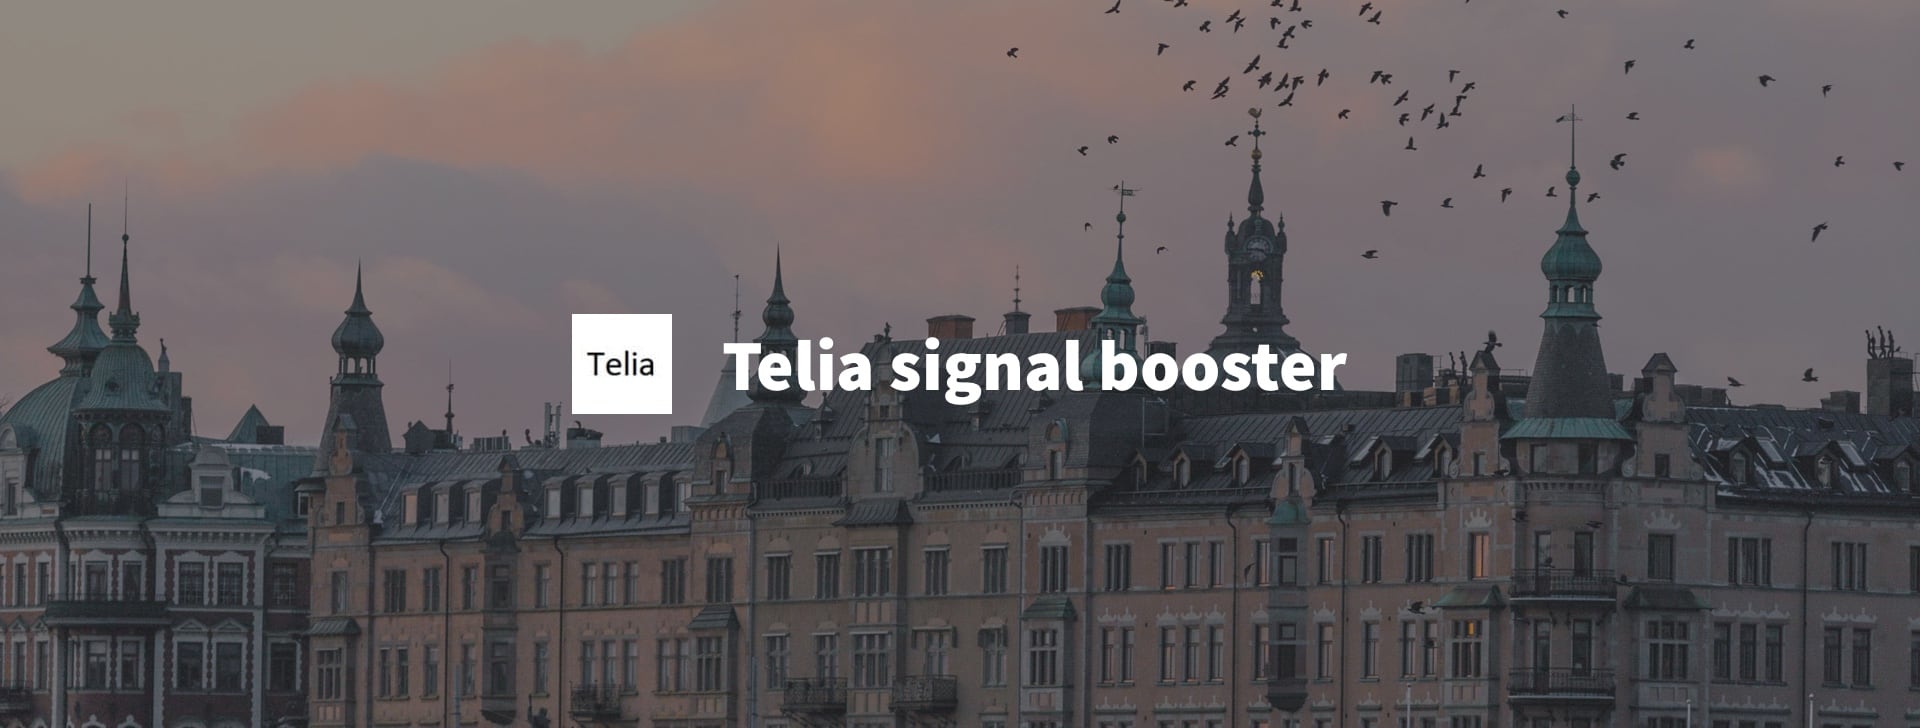 Telia mobile signal